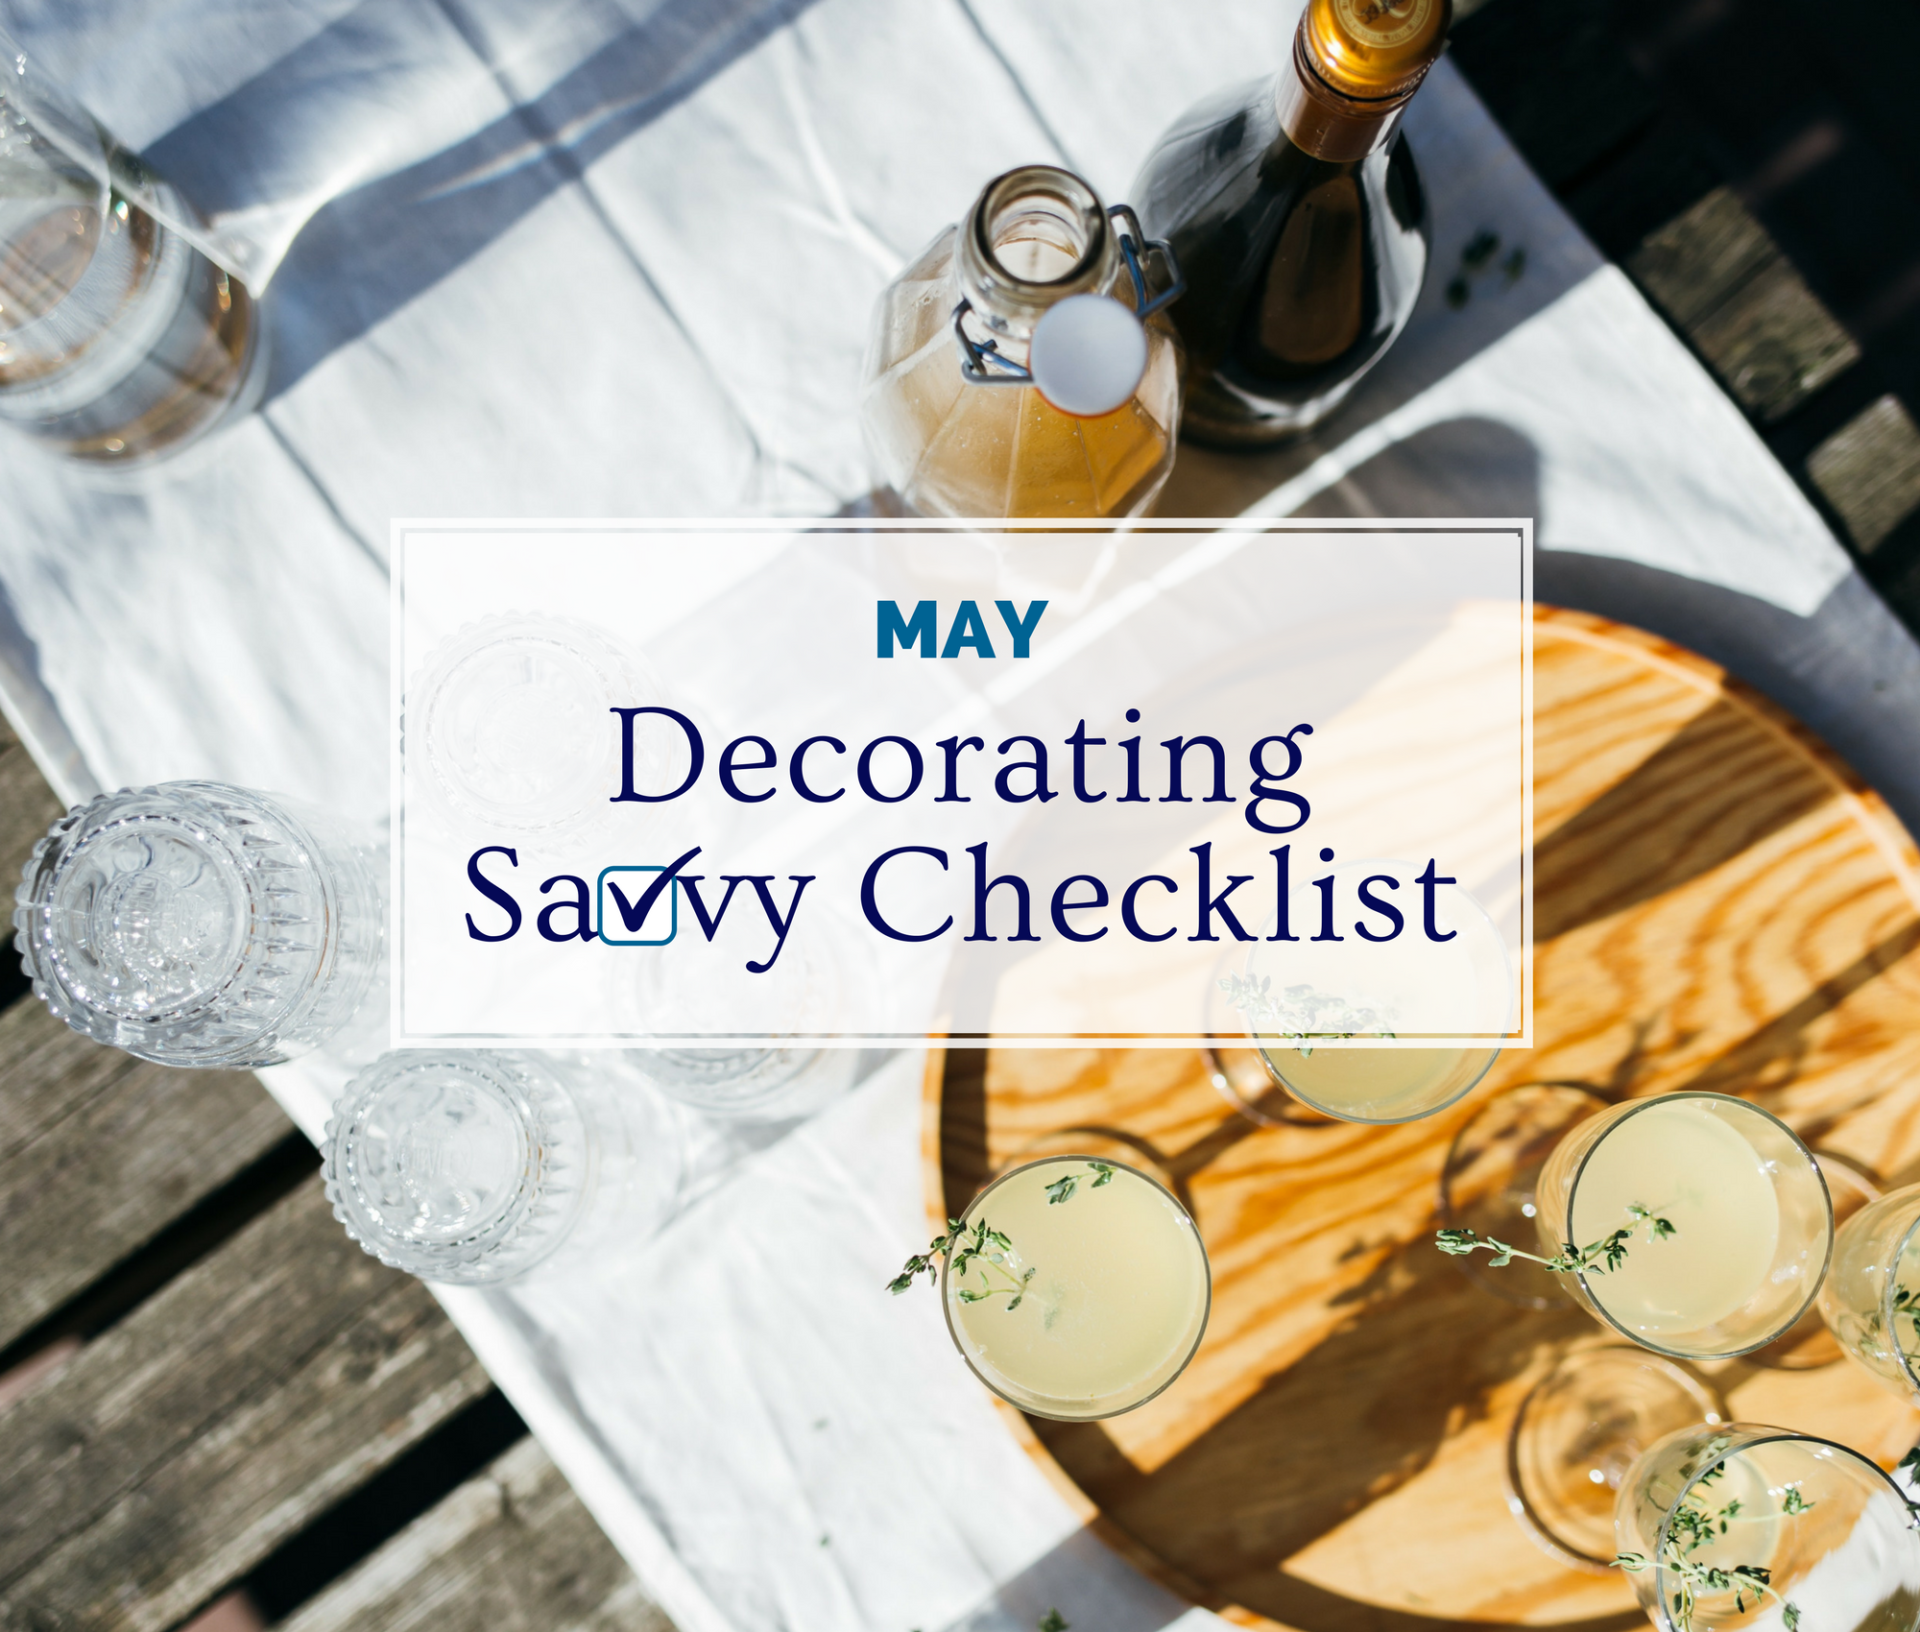 May Decorating Savvy Checklist